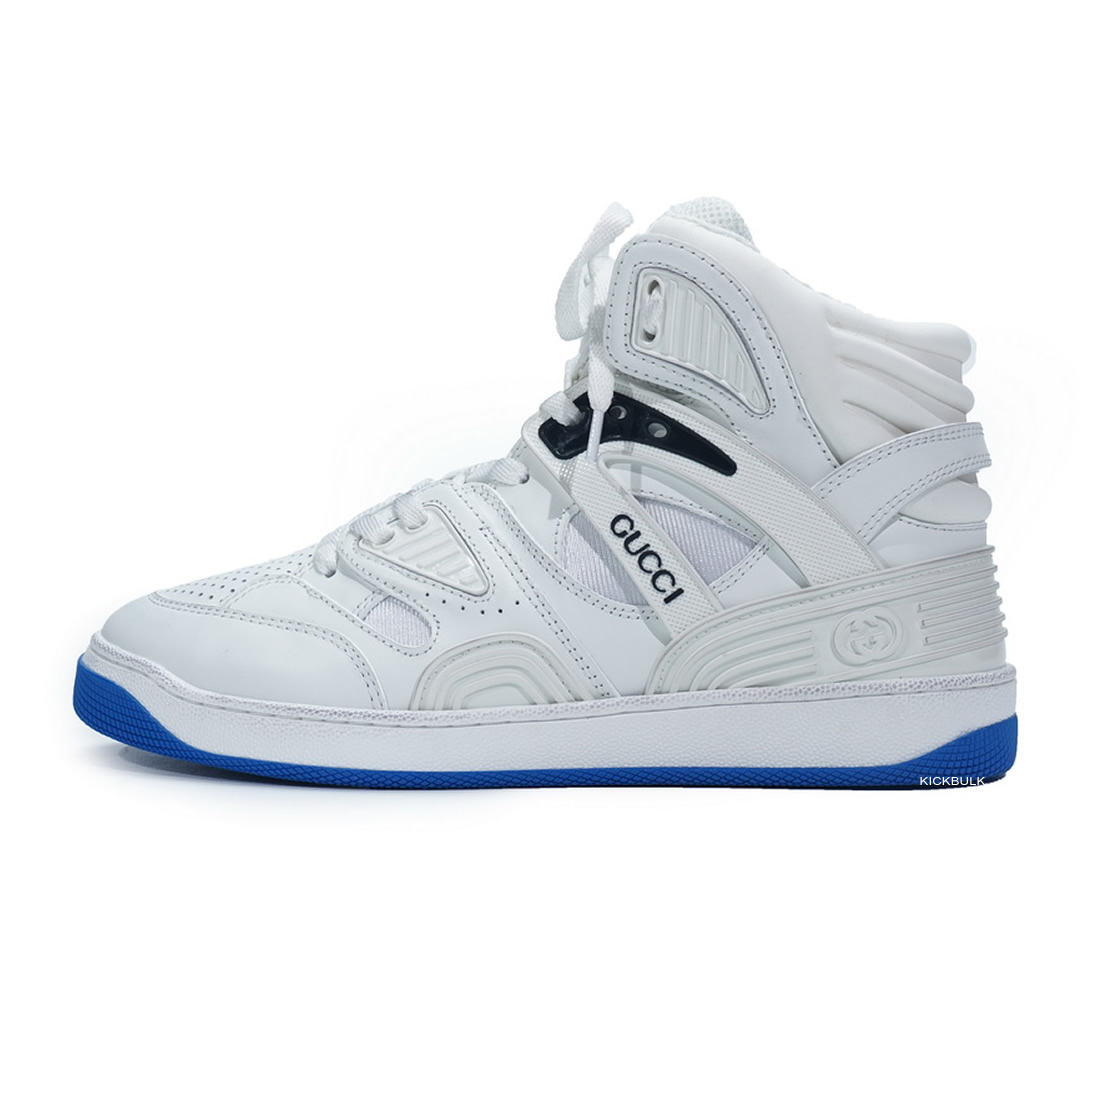 Gucci Basketball Shoes White Blue 6613032sh901072 1 - www.kickbulk.co